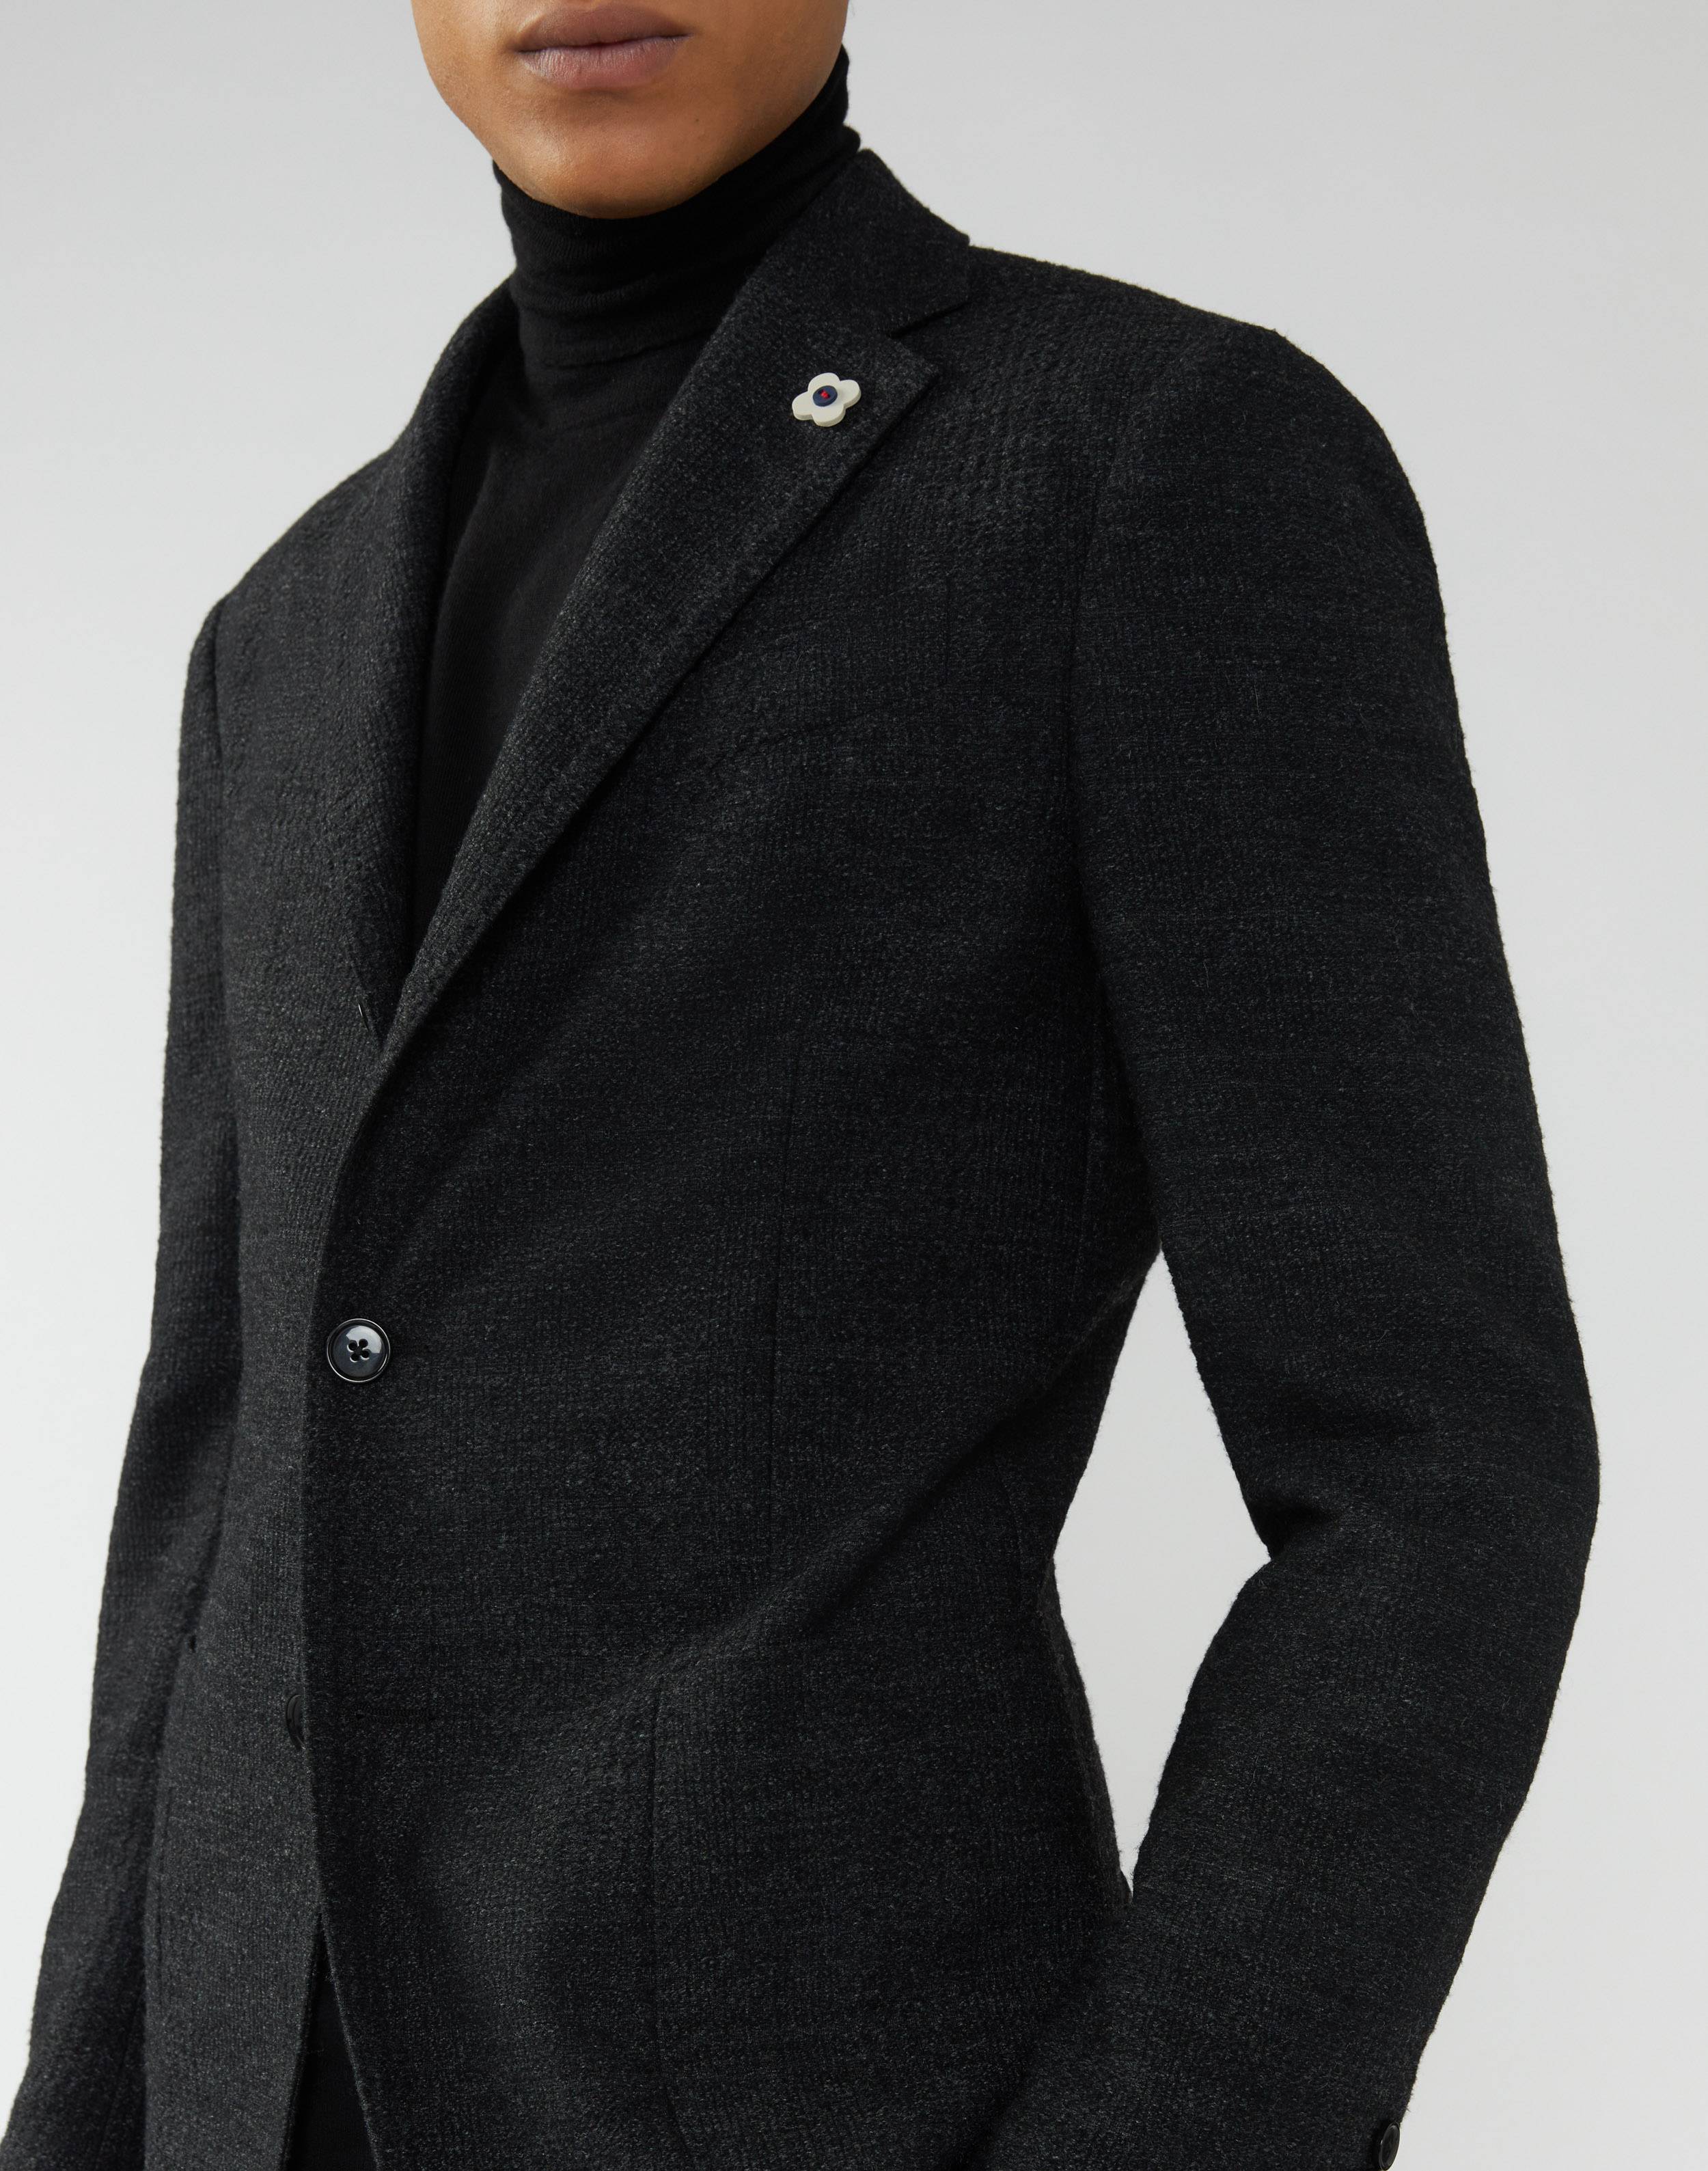 Veste motif Prince de Galles effet chenille noire et grise - Easy Wear